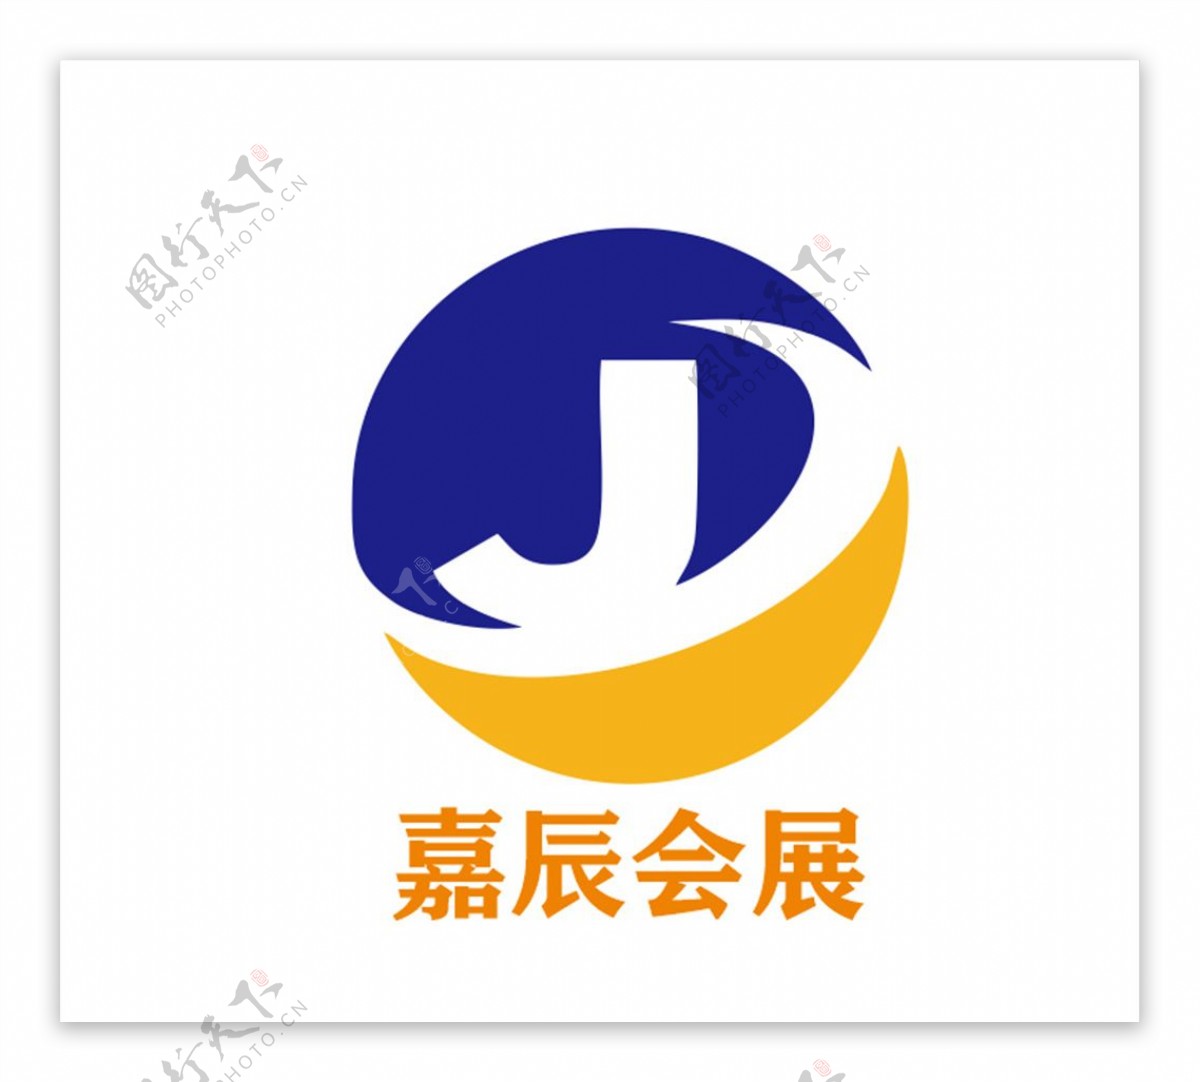 嘉辰会展logo图片